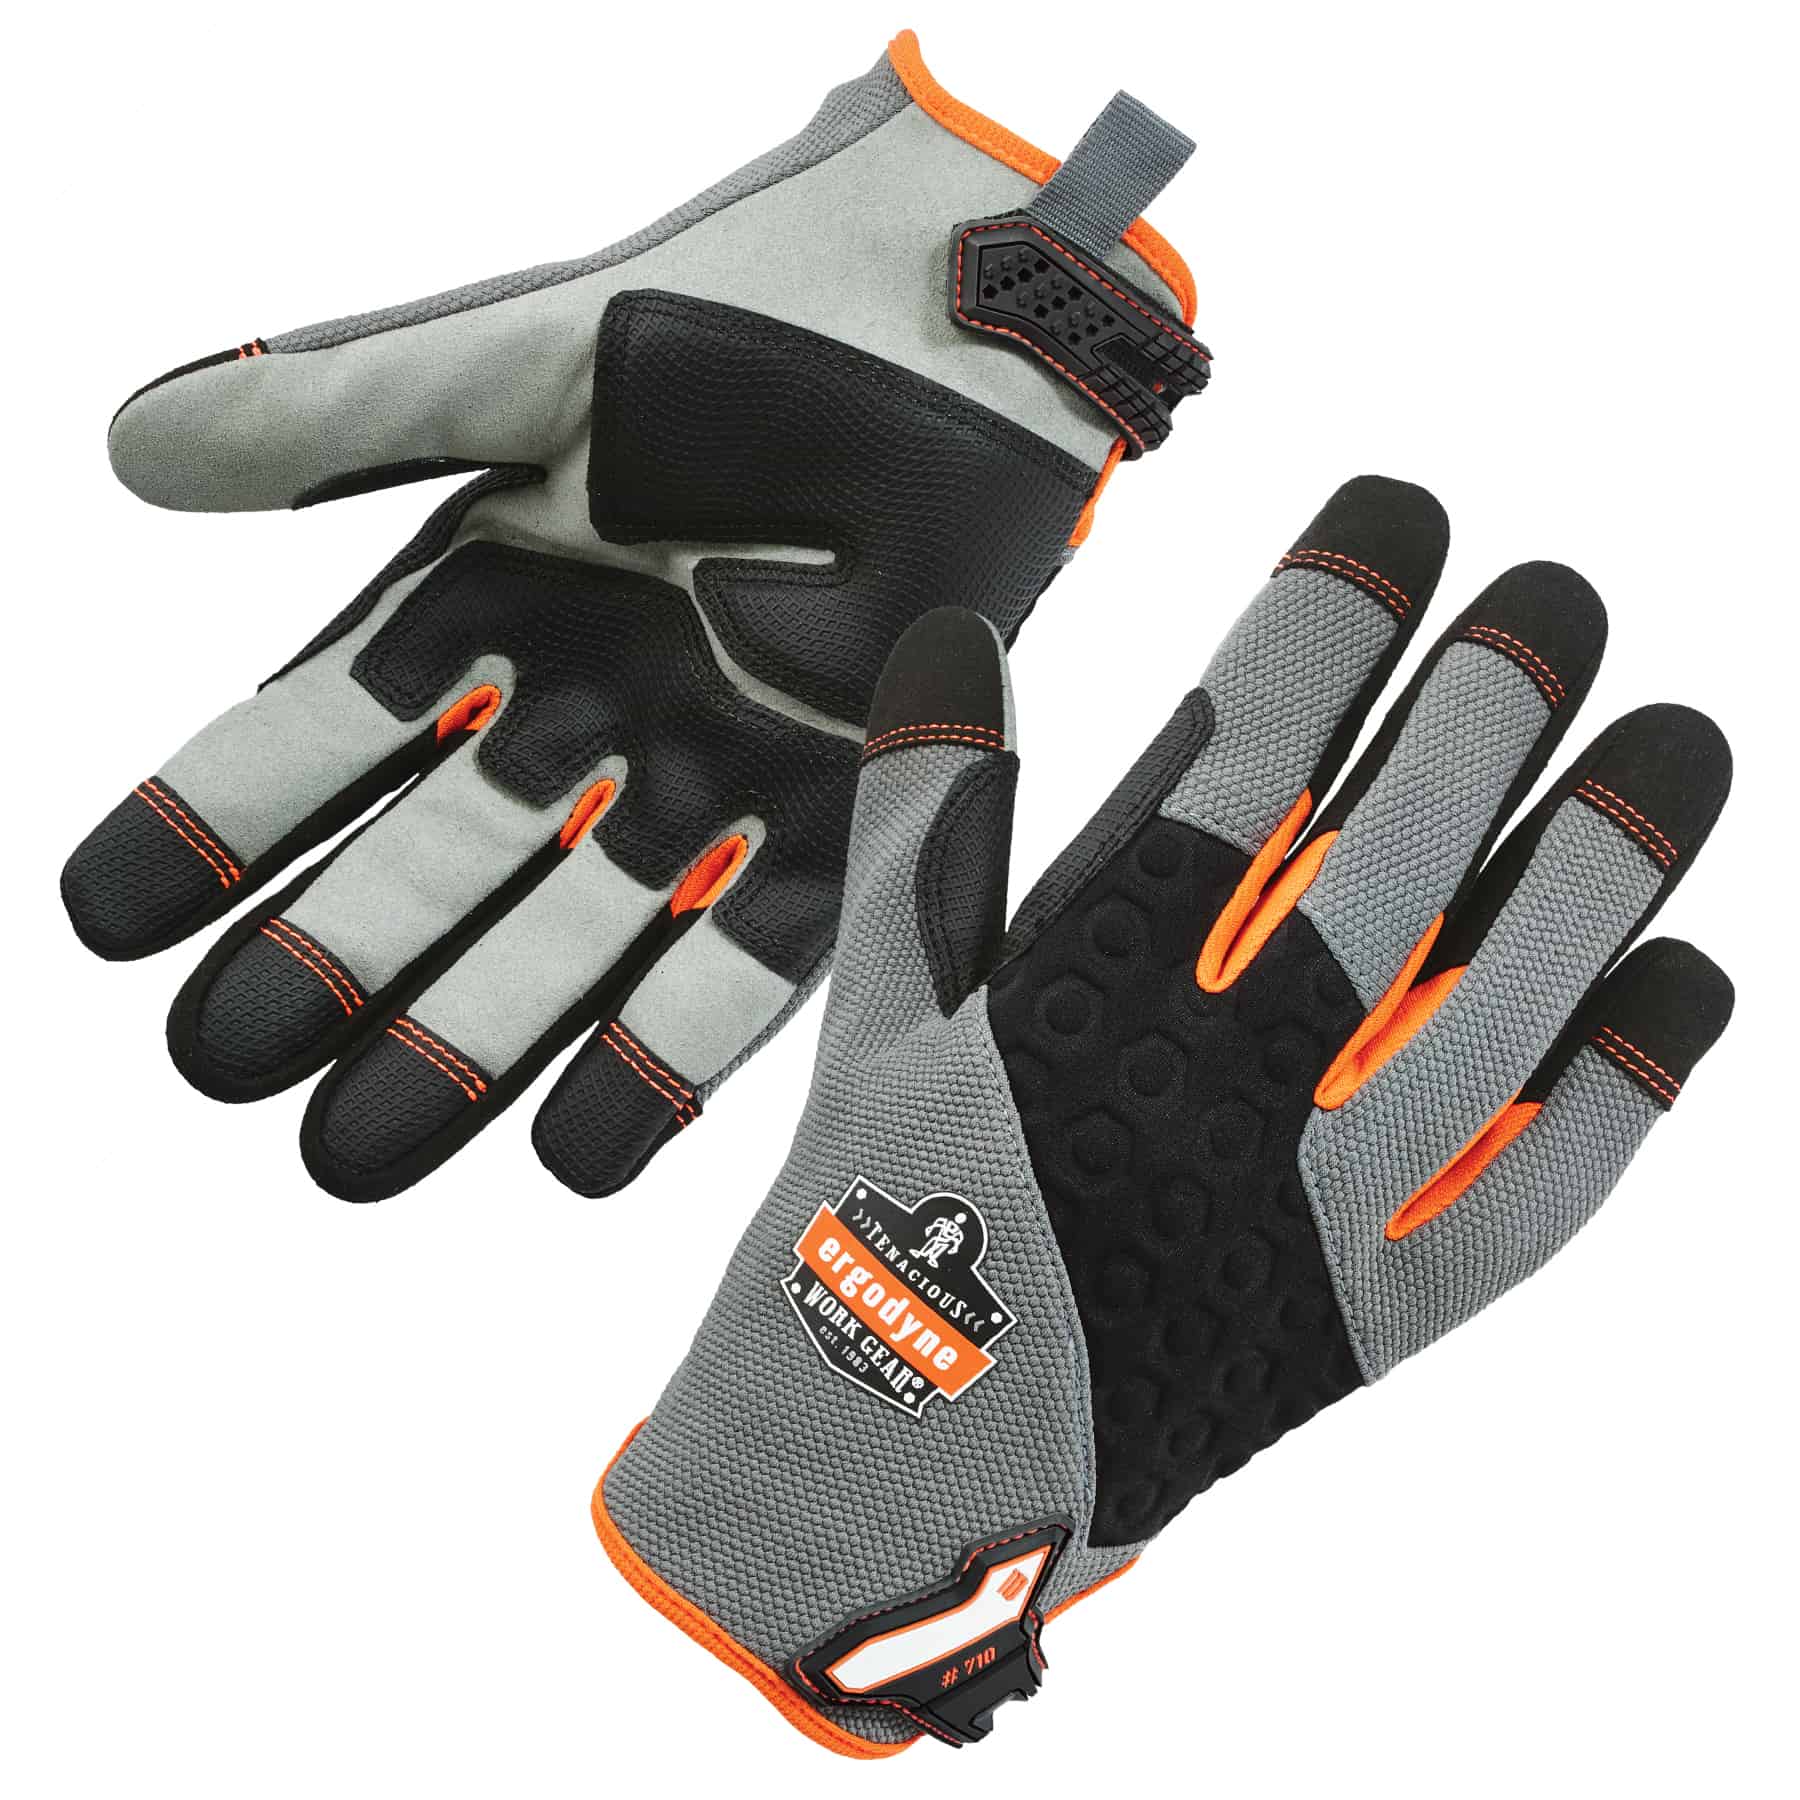 Heavy-Duty Mechanics Gloves